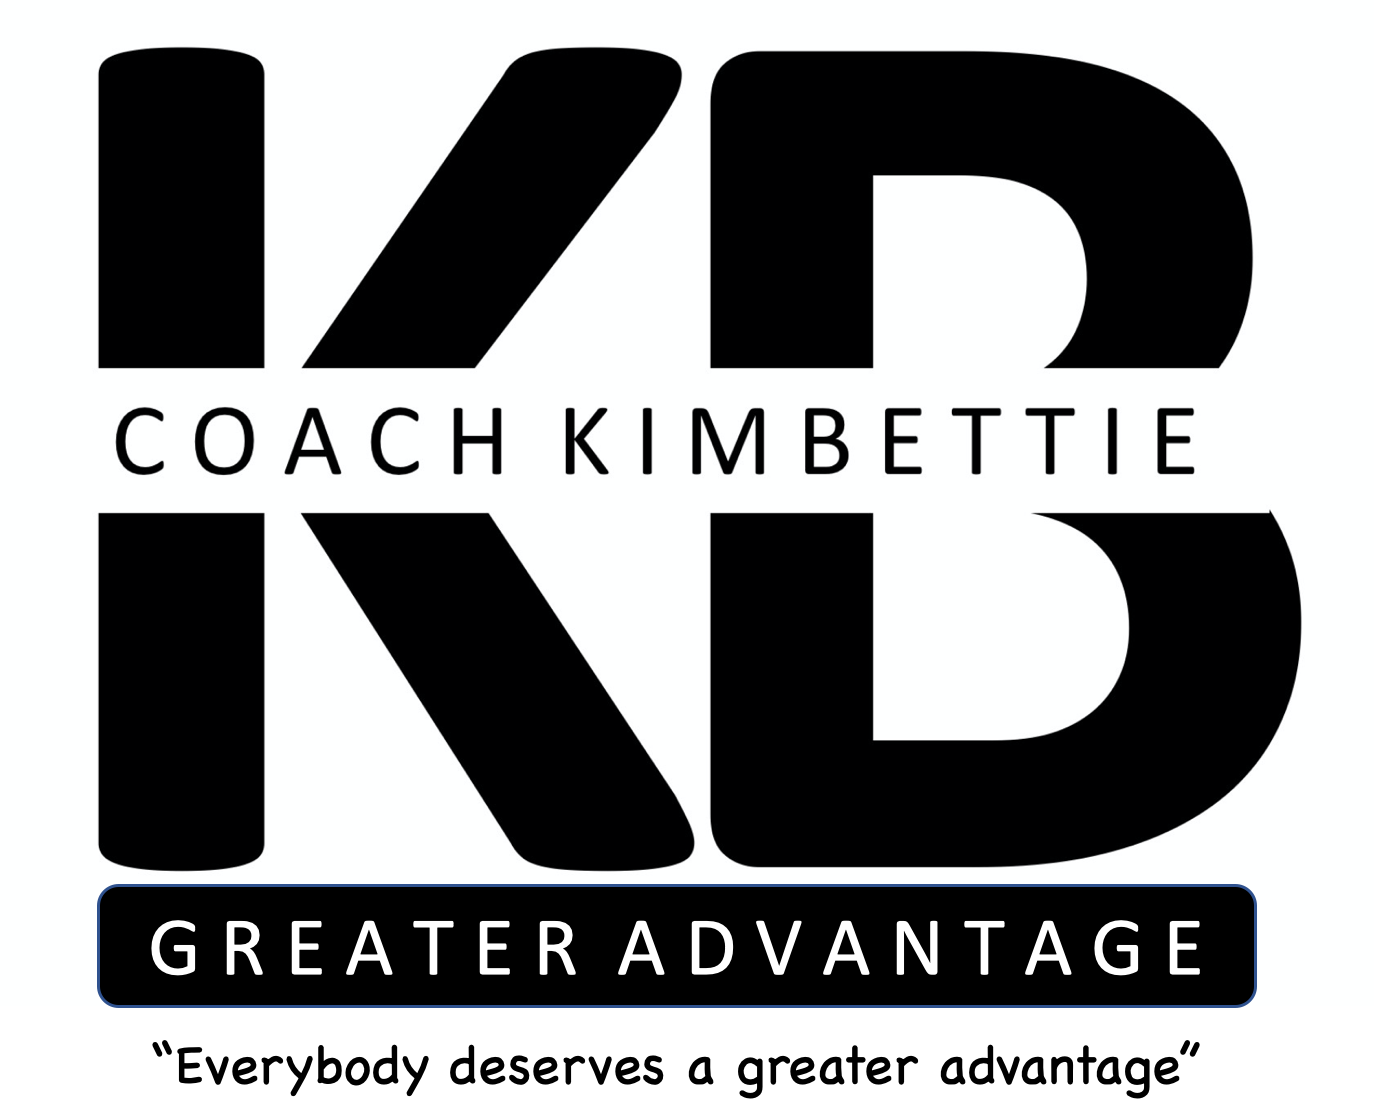 Coach Kim Bettie